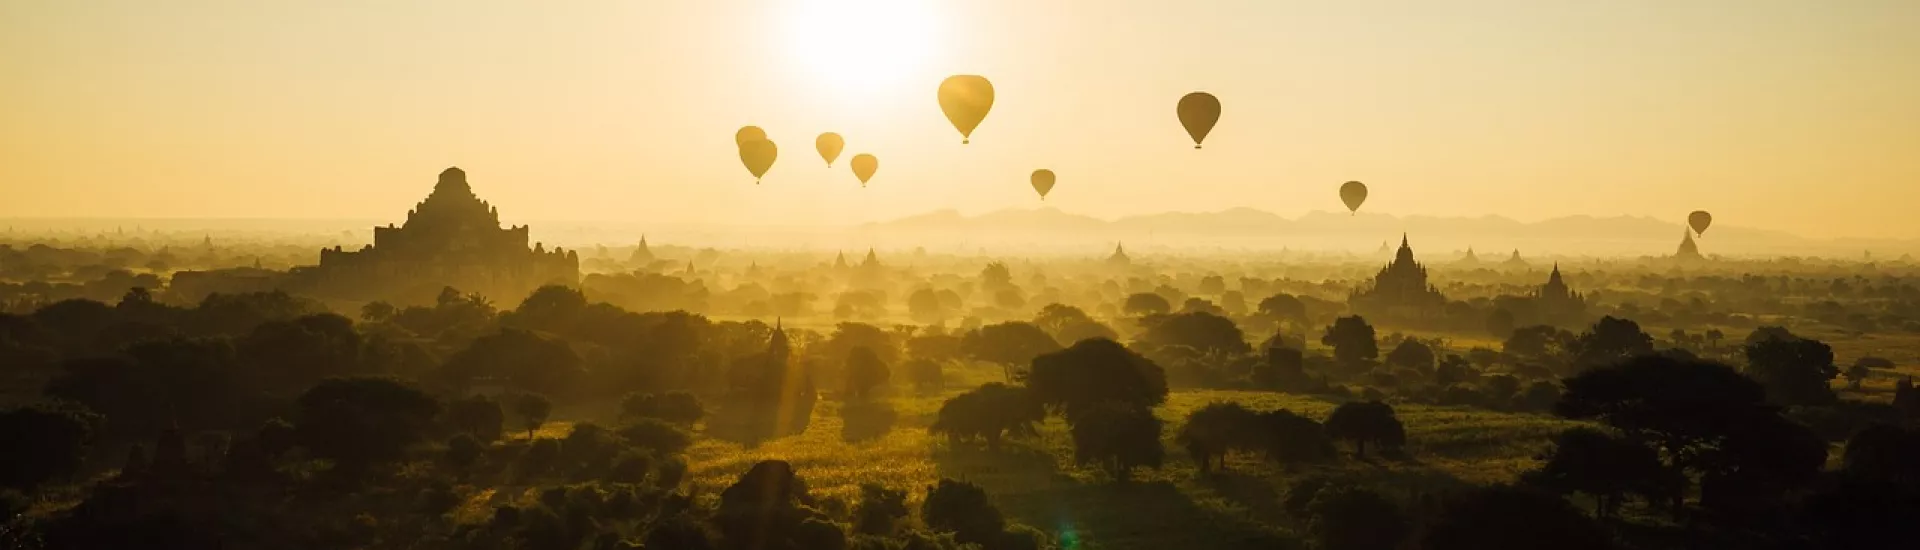 Heißluftballons im Sonnenuntergang von Bagan